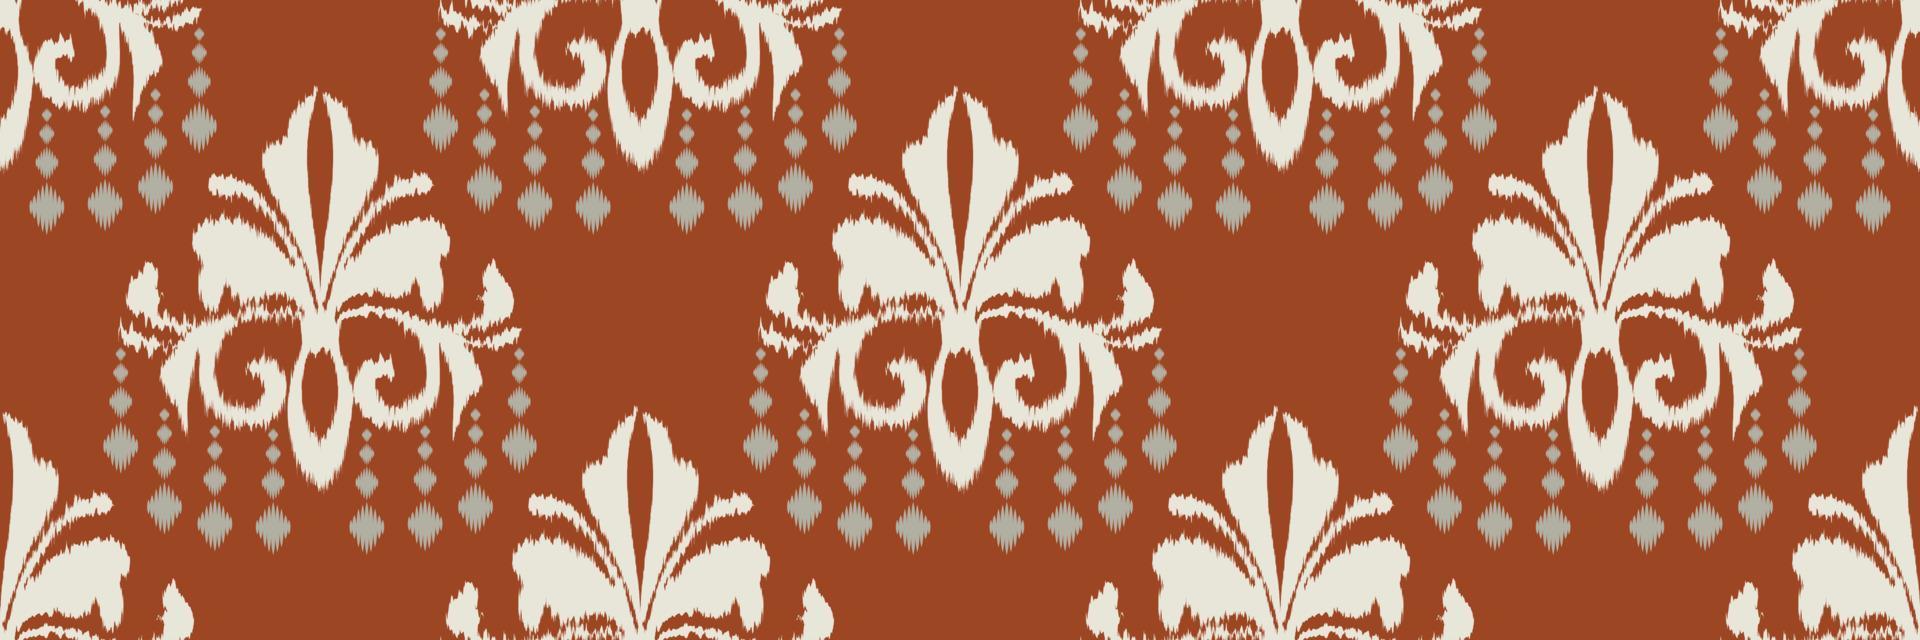 bordado escandinavo de damasco ikat, abstracto tribal sin costuras ikat, natividad étnica textil digital diseño asiático arte antiguo para estampados tela saree mughal franjas textura kurti kurtis kurtas vector